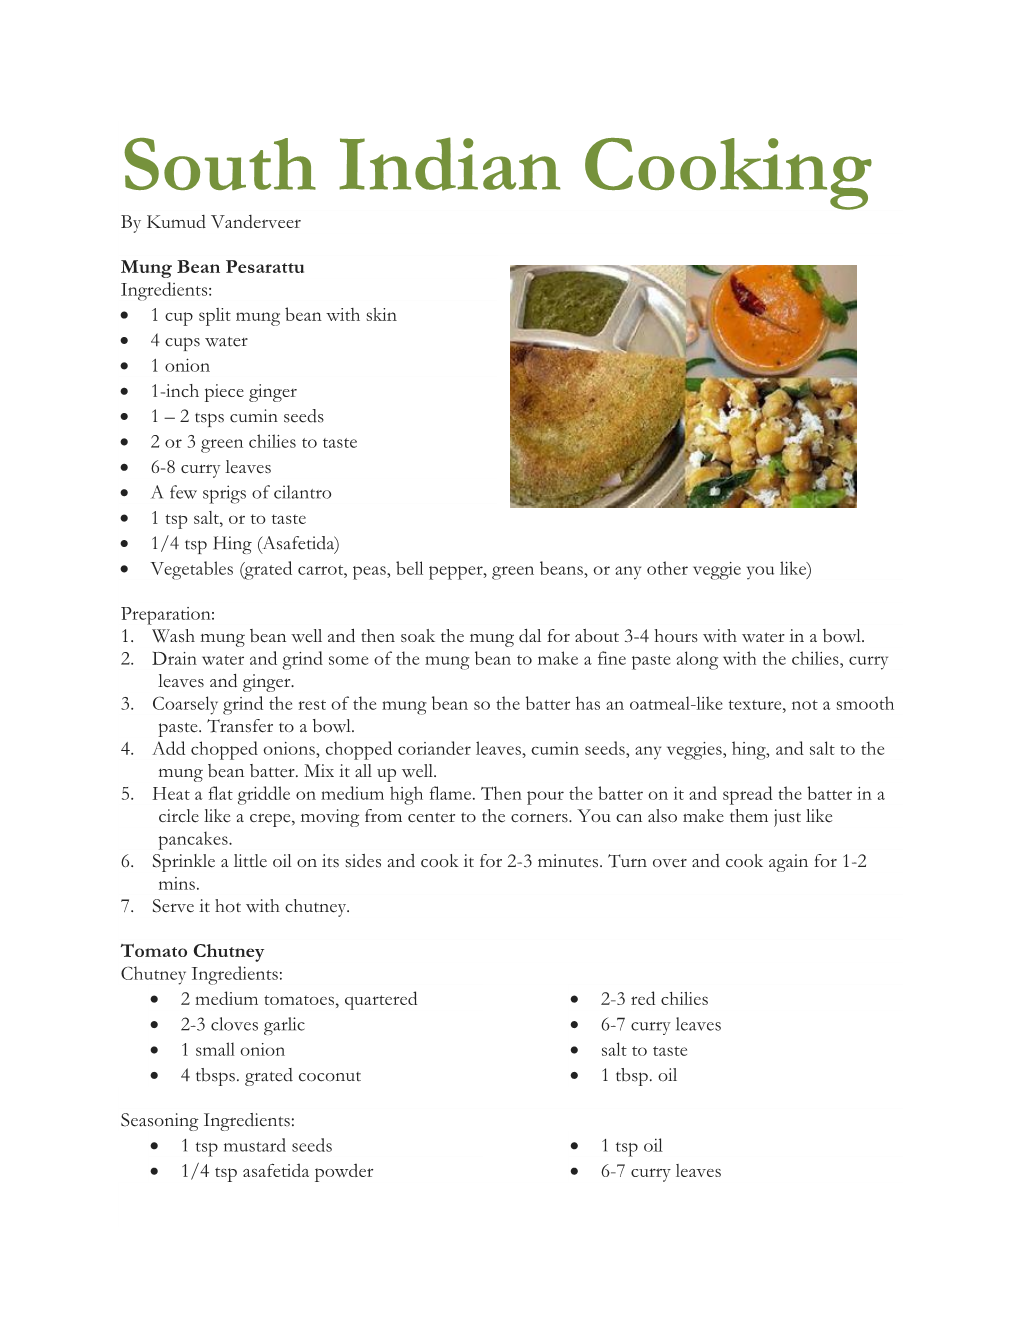 South Indian Cooking by Kumud Vanderveer